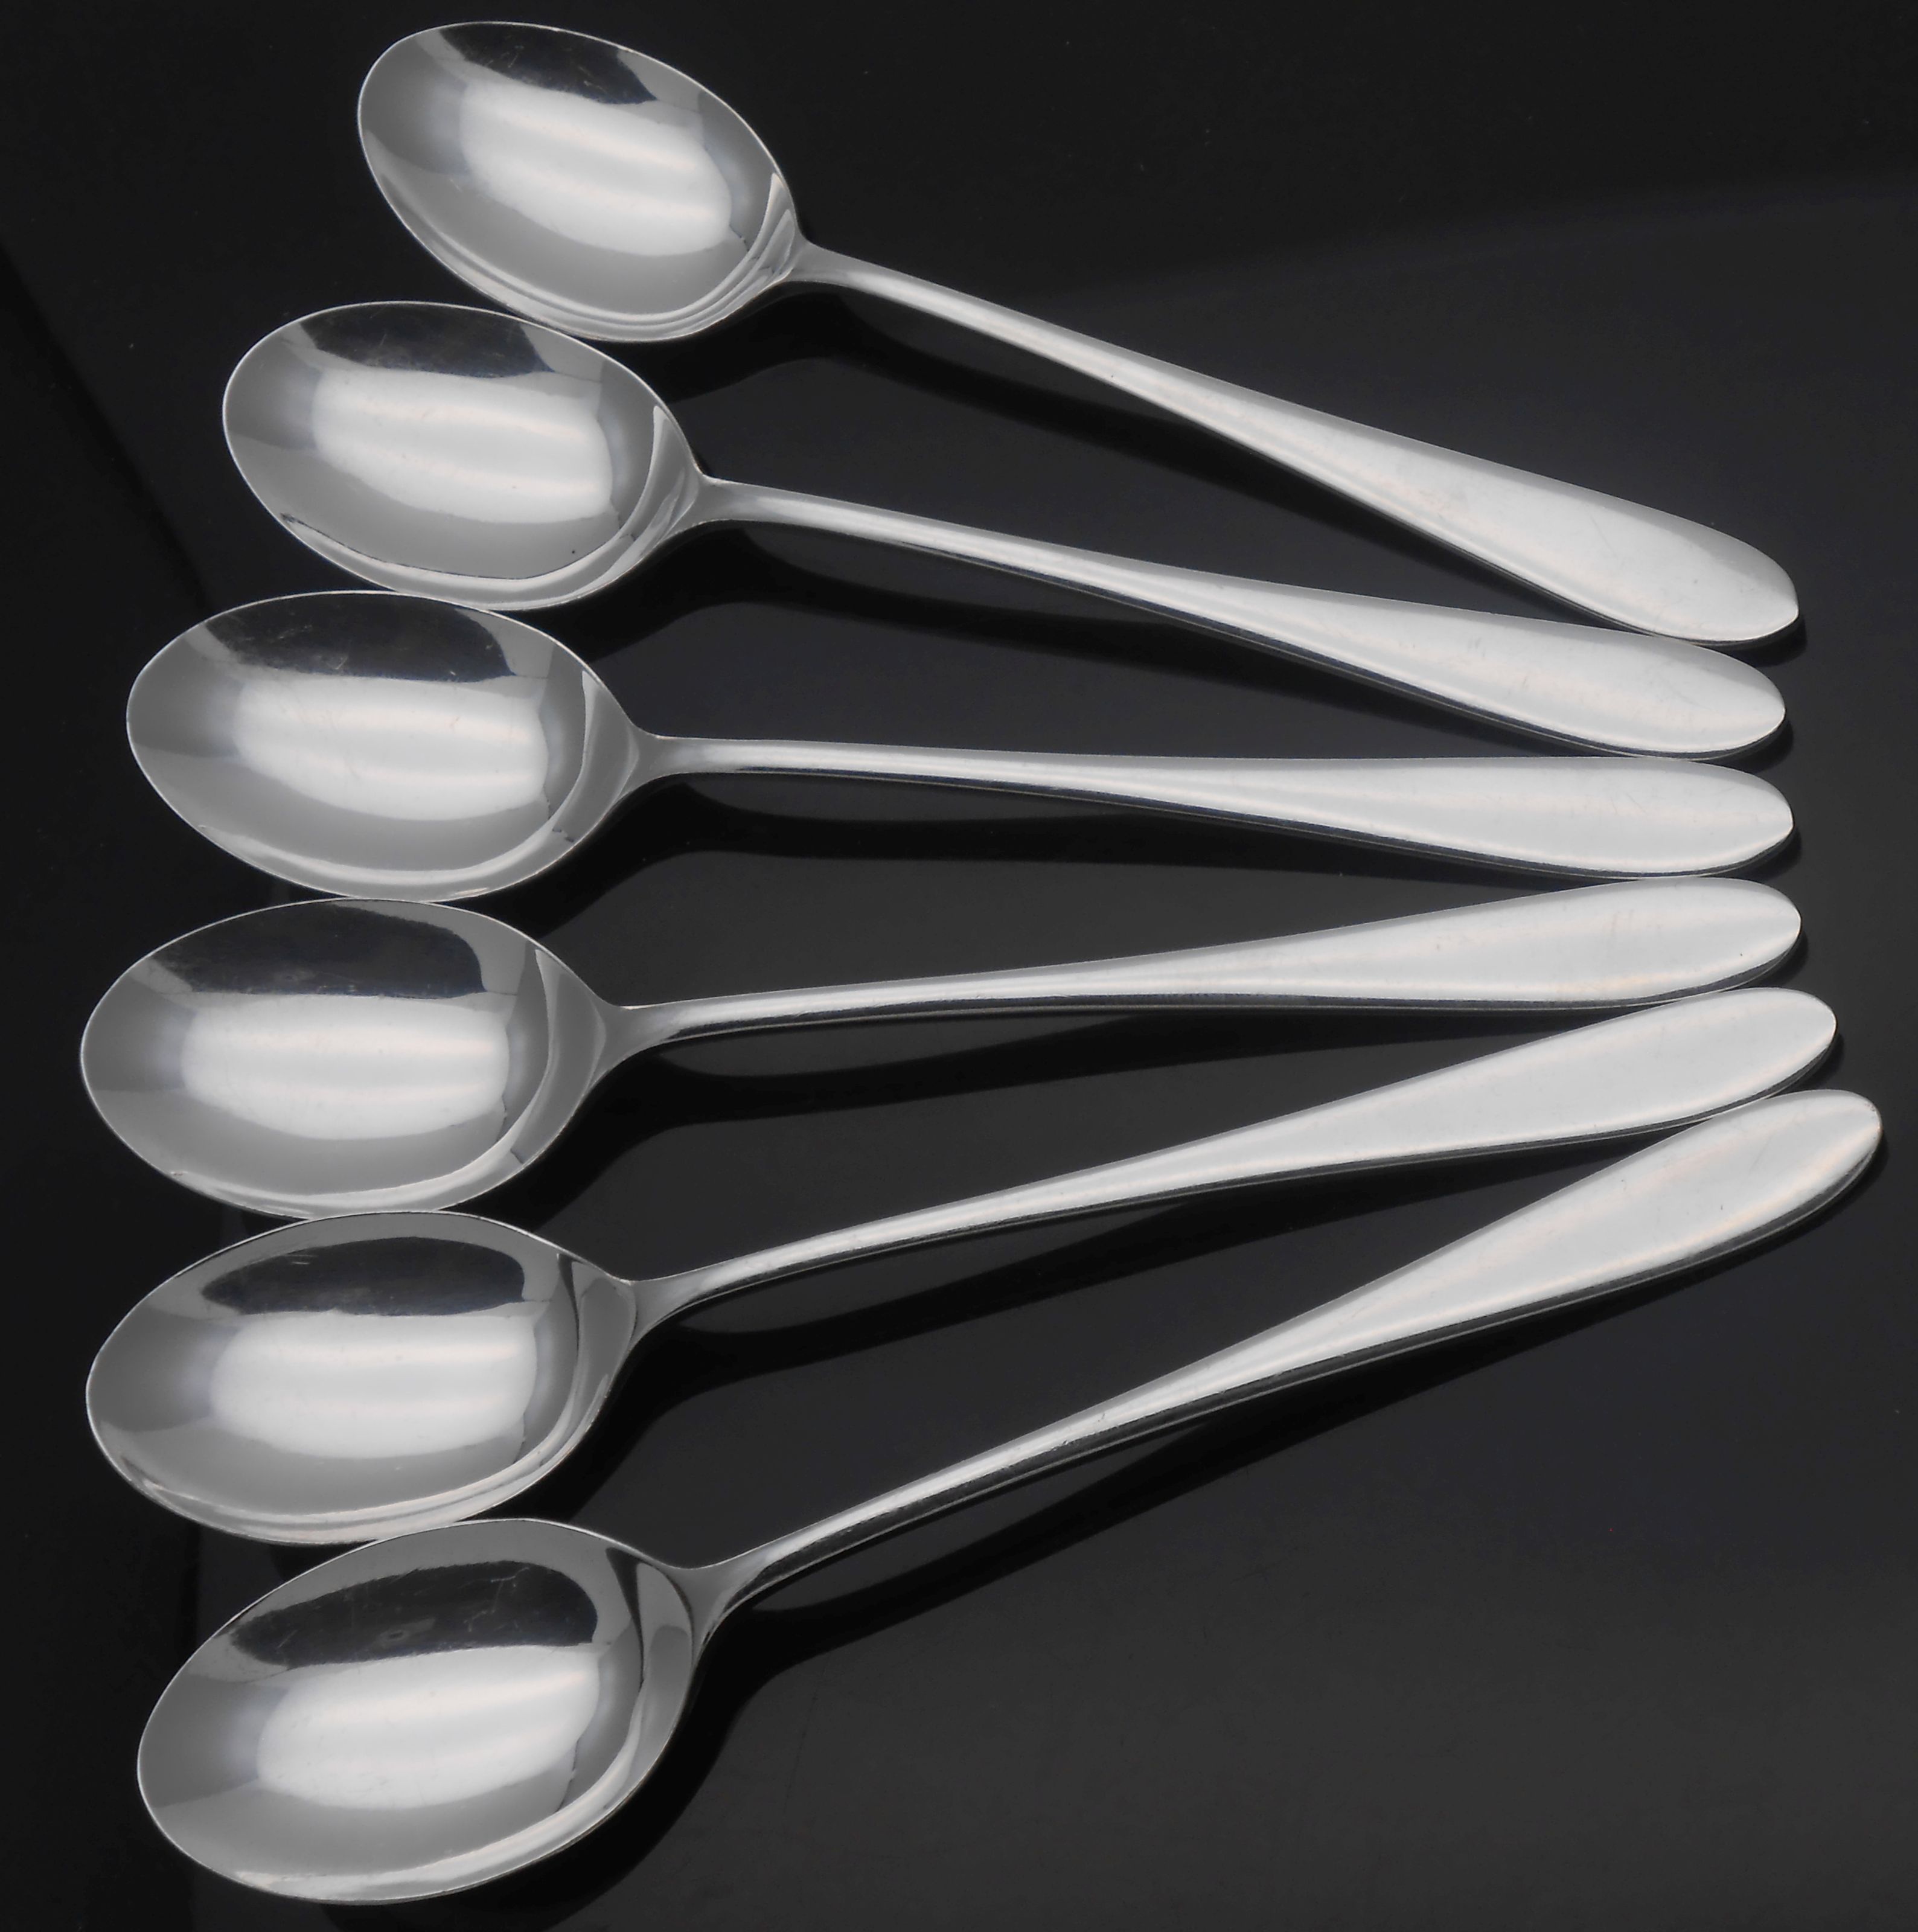 Pride pattern cutlery / flatware